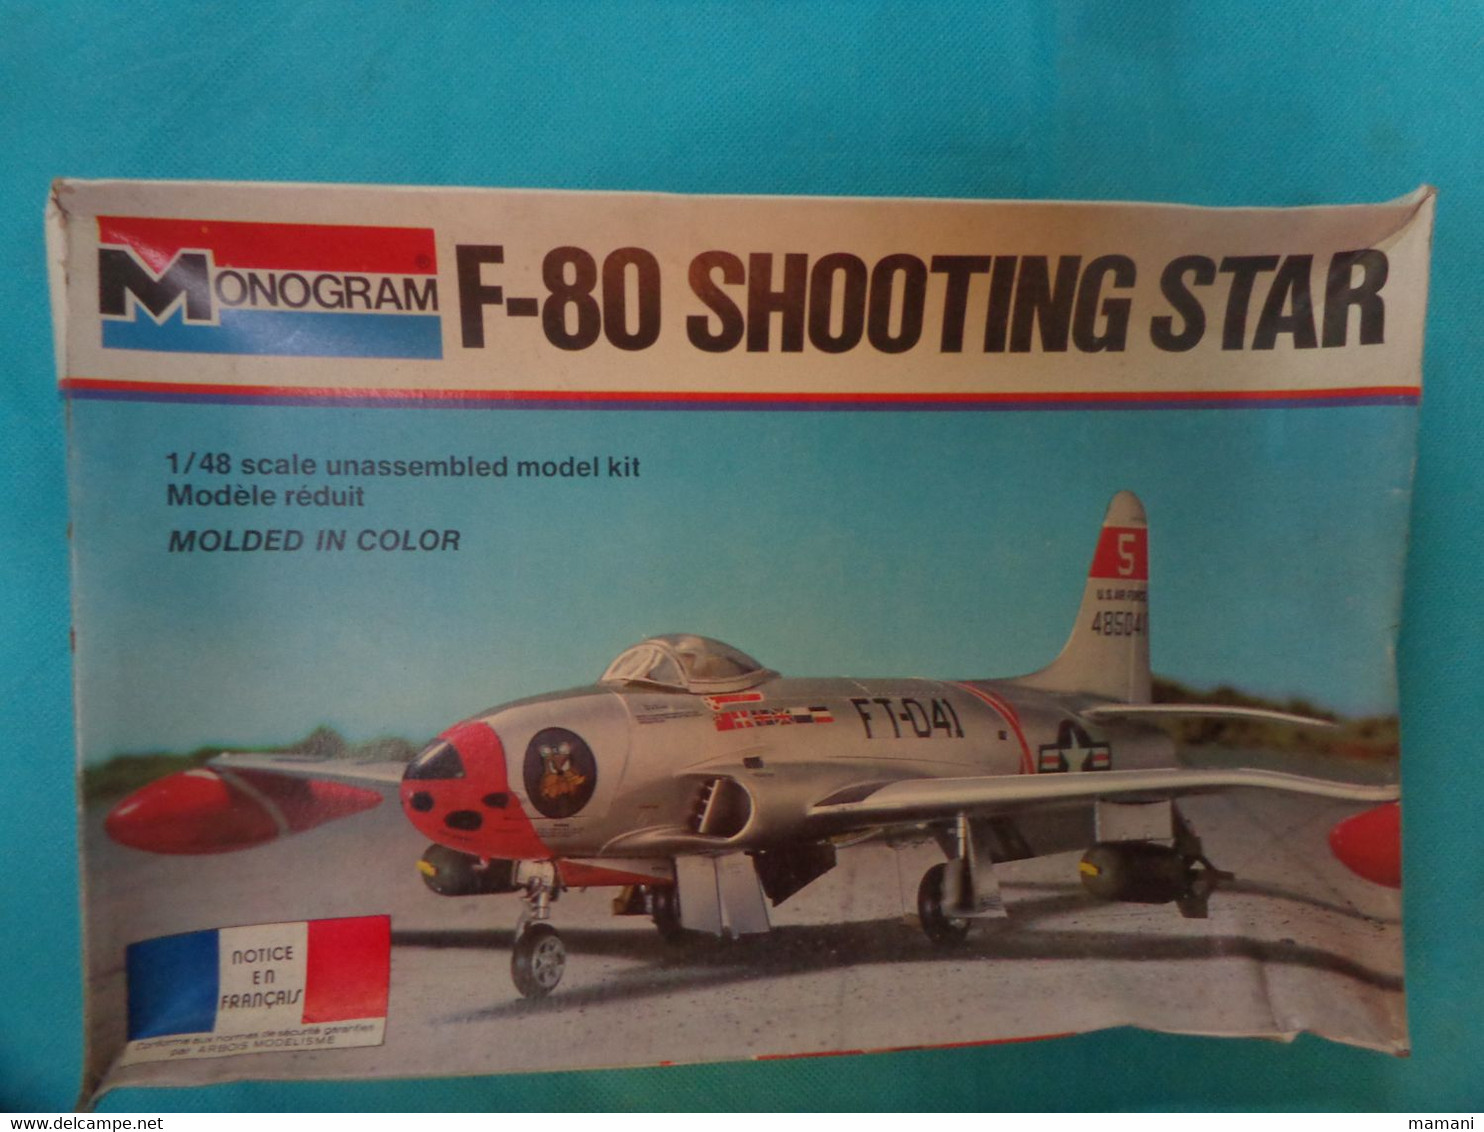 Maquette Plastique Monogram 1/48   Ref 5404 F-80 SH00TING STAR - Airplanes